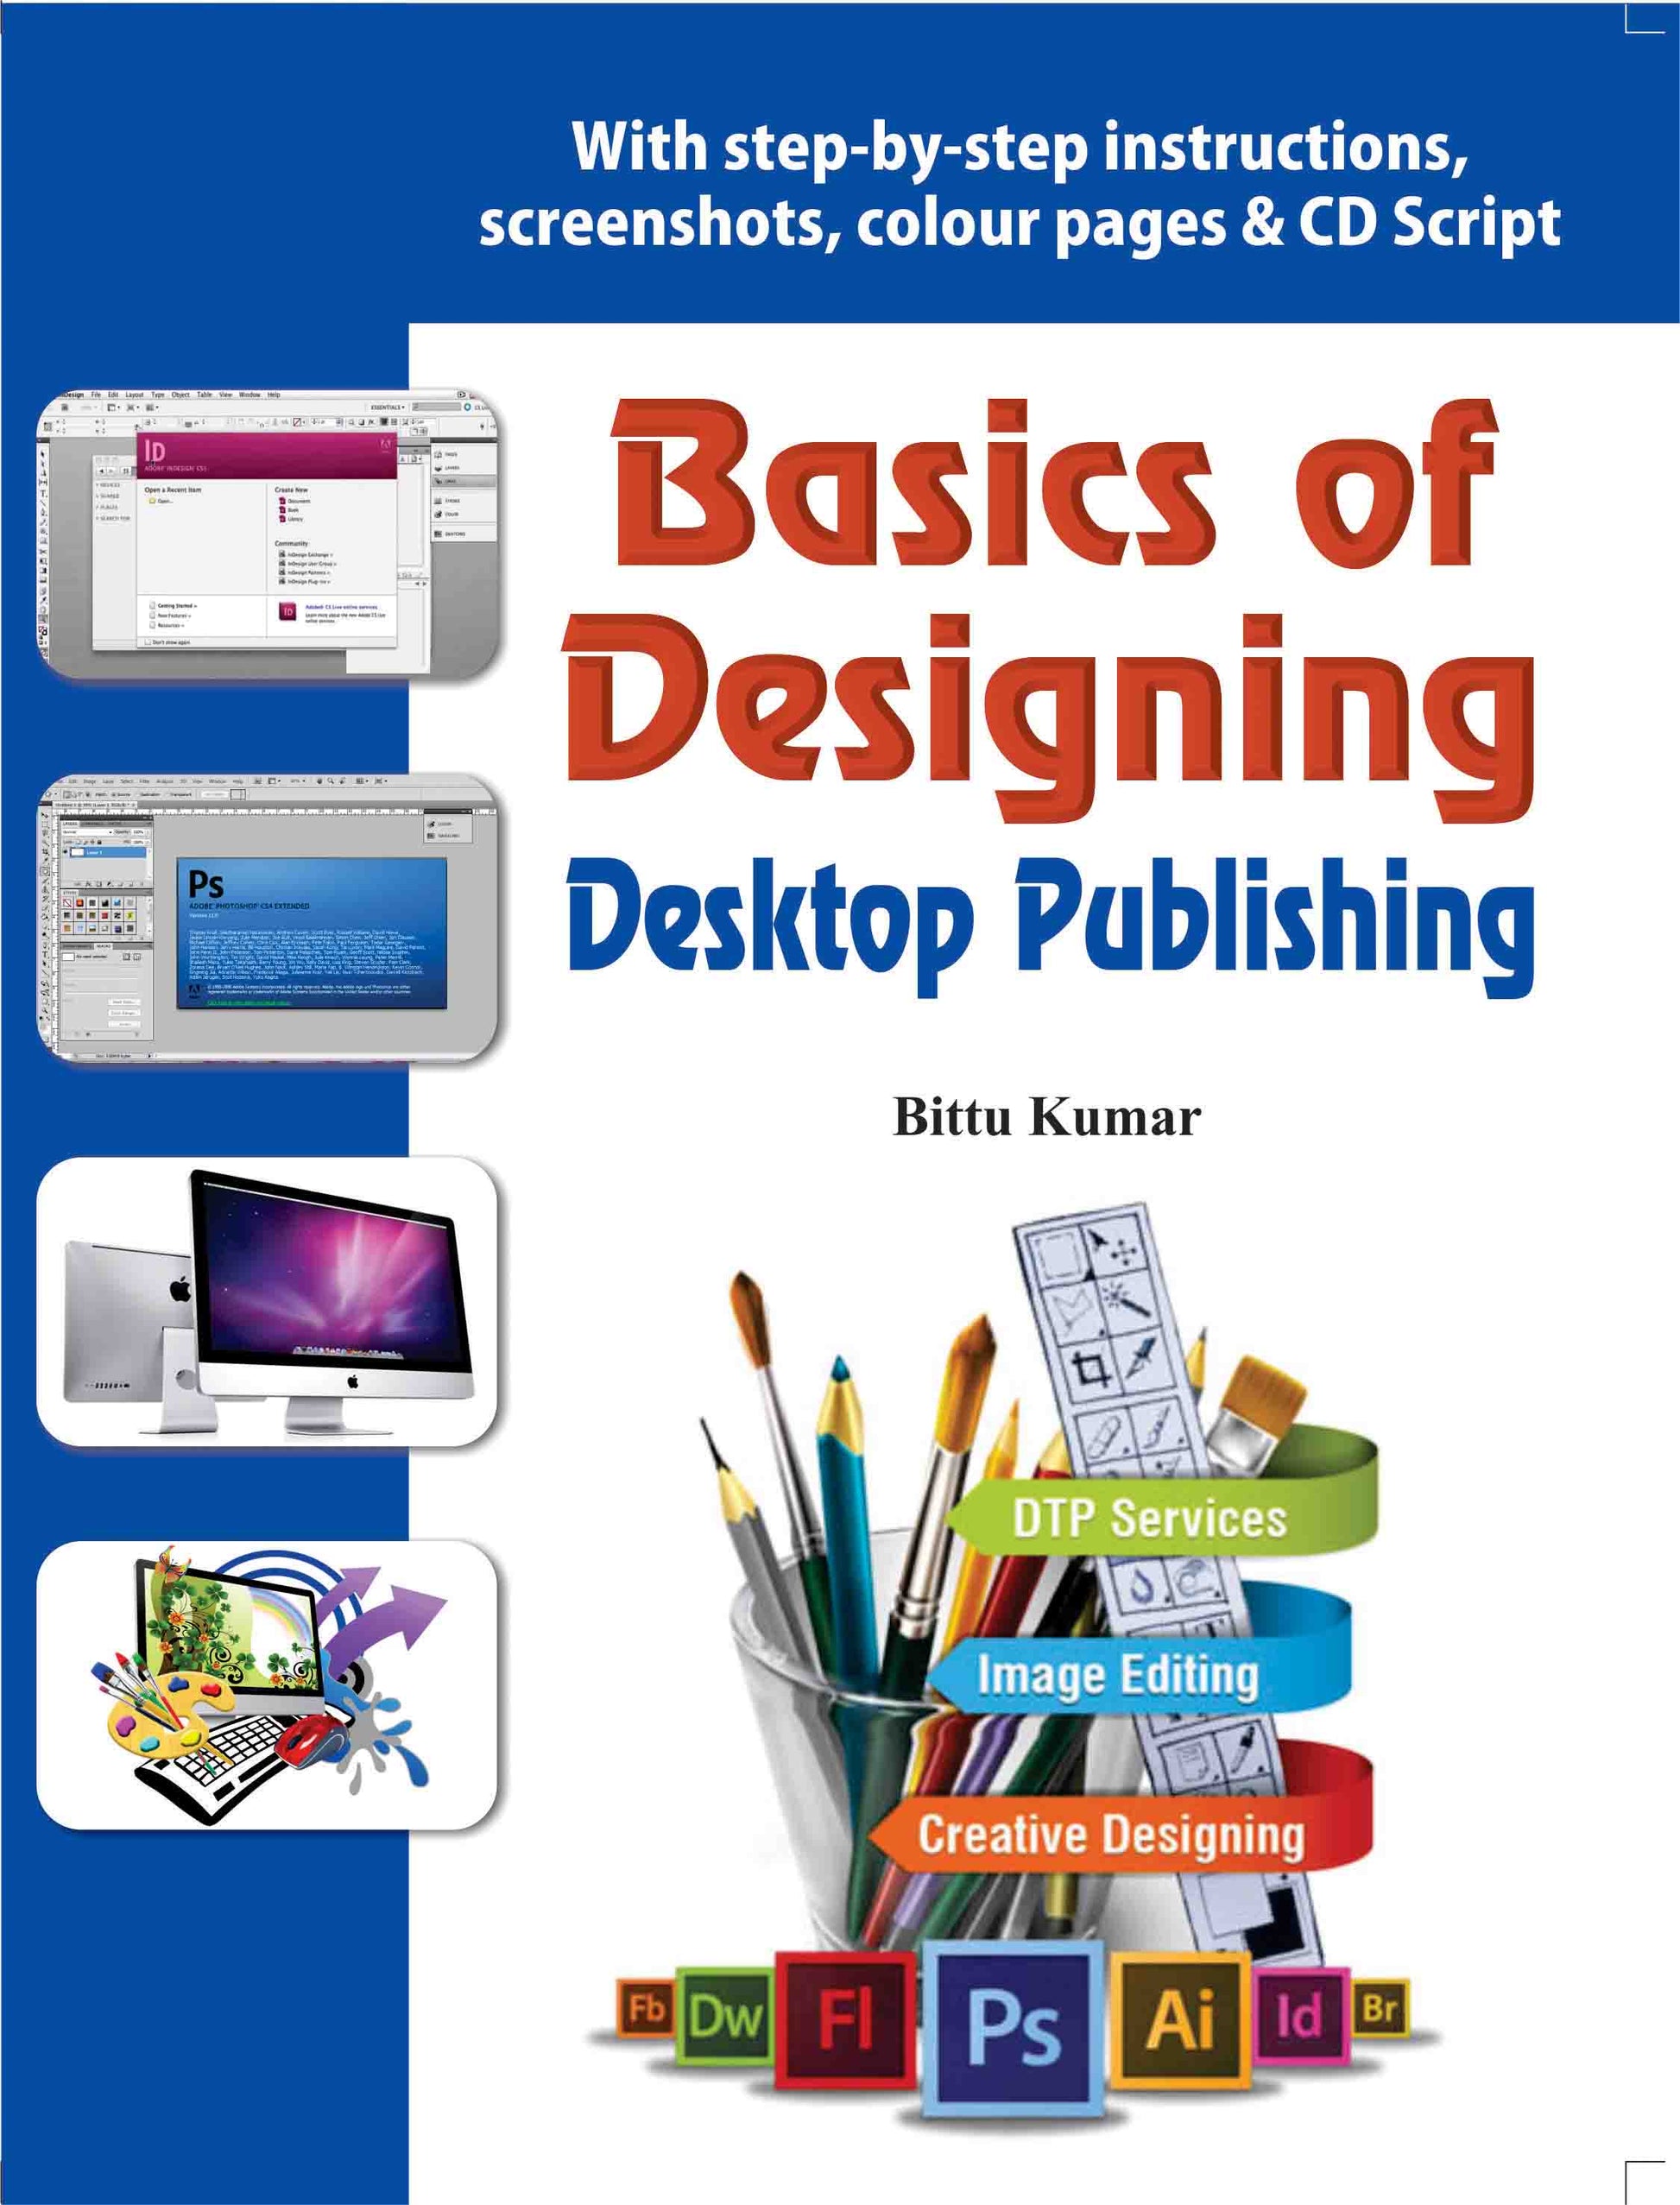 Basics of Designing - Desktop Publishing